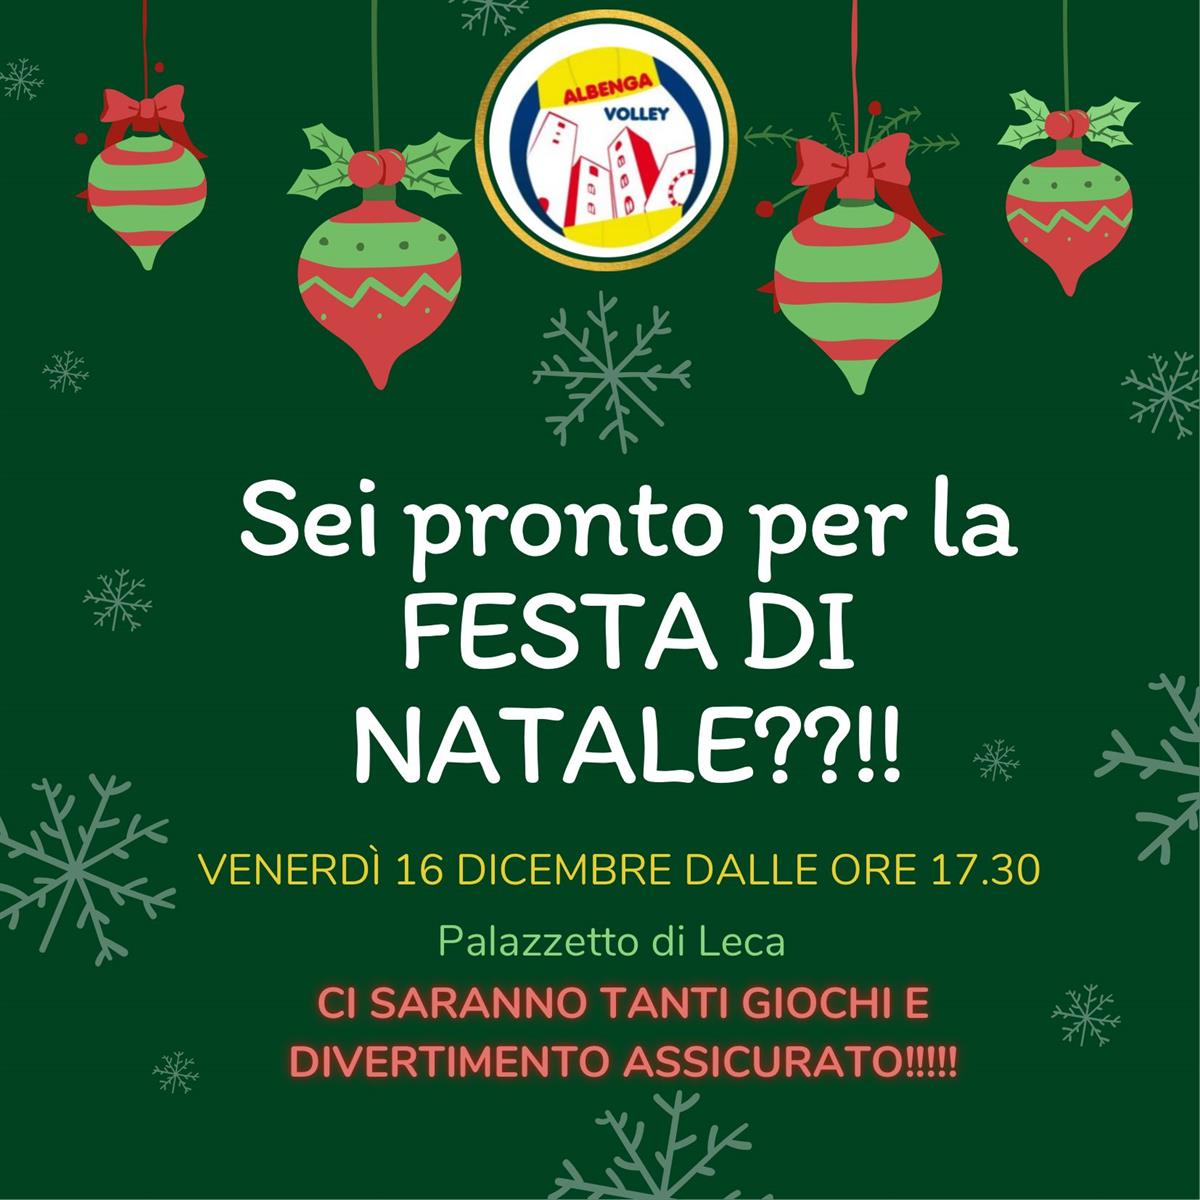 Festa di Natale per l'Albenga Volley!